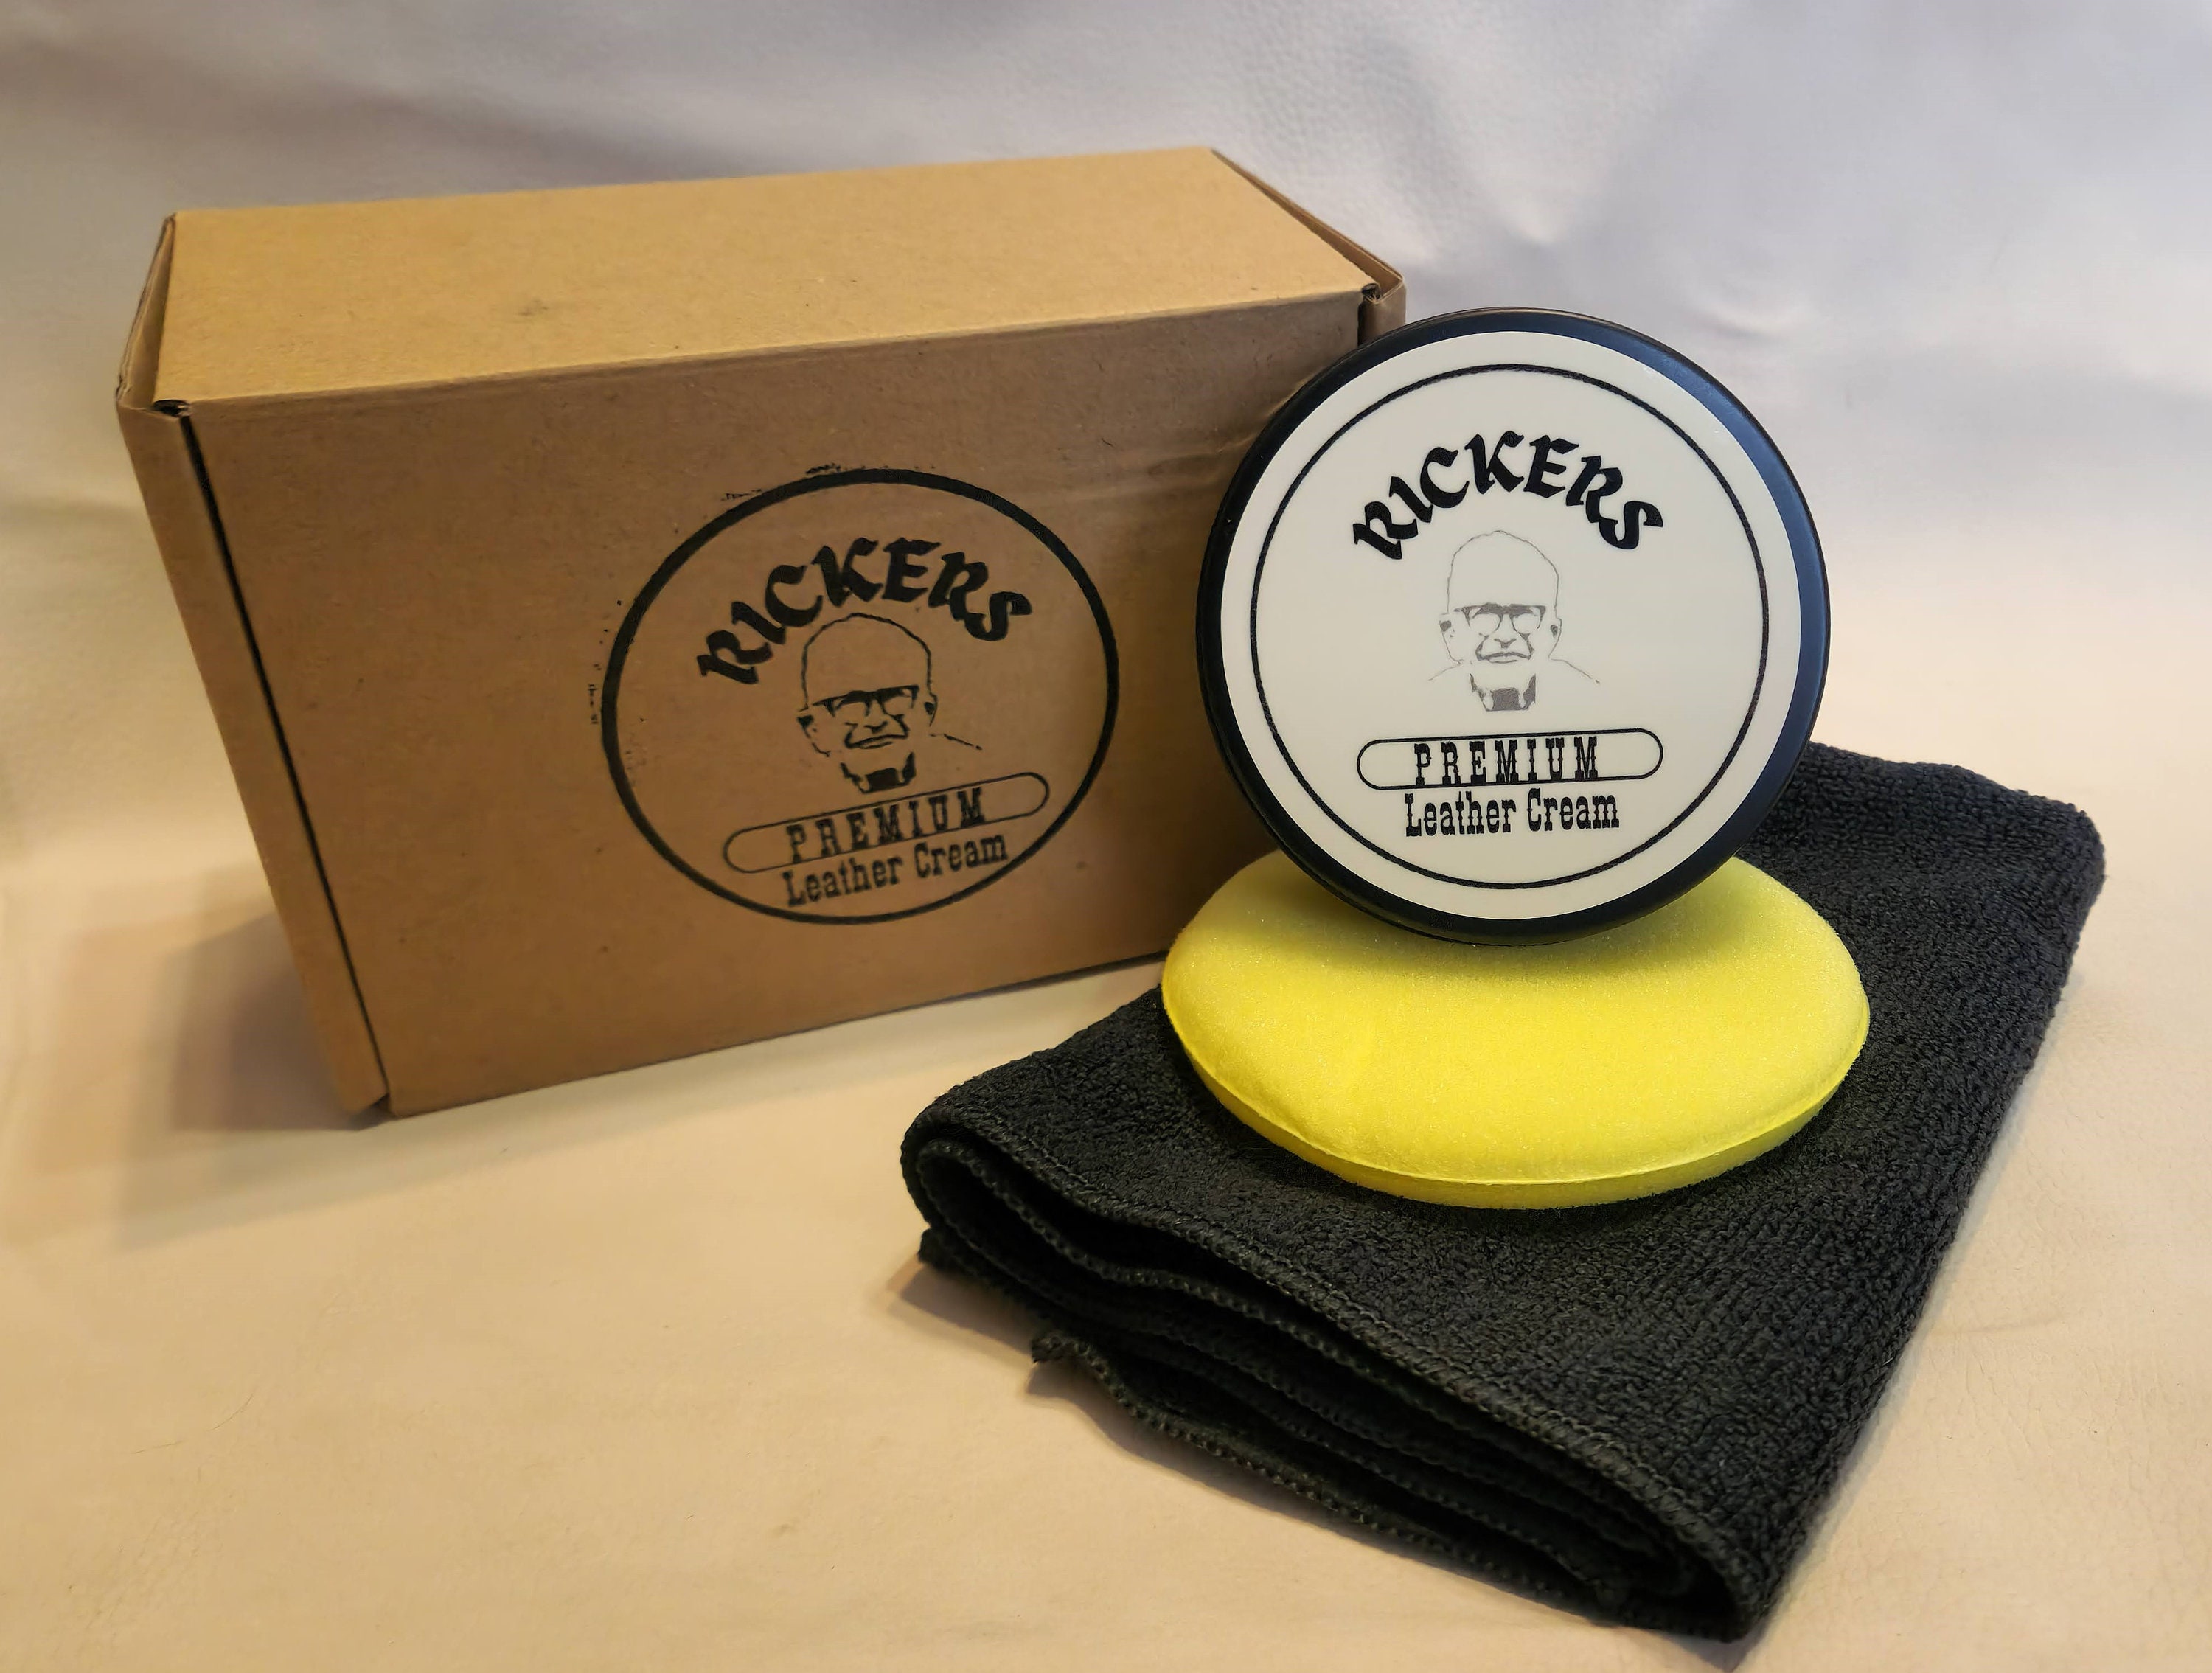 Rickers Premium Leather Cream 3 Oz. 